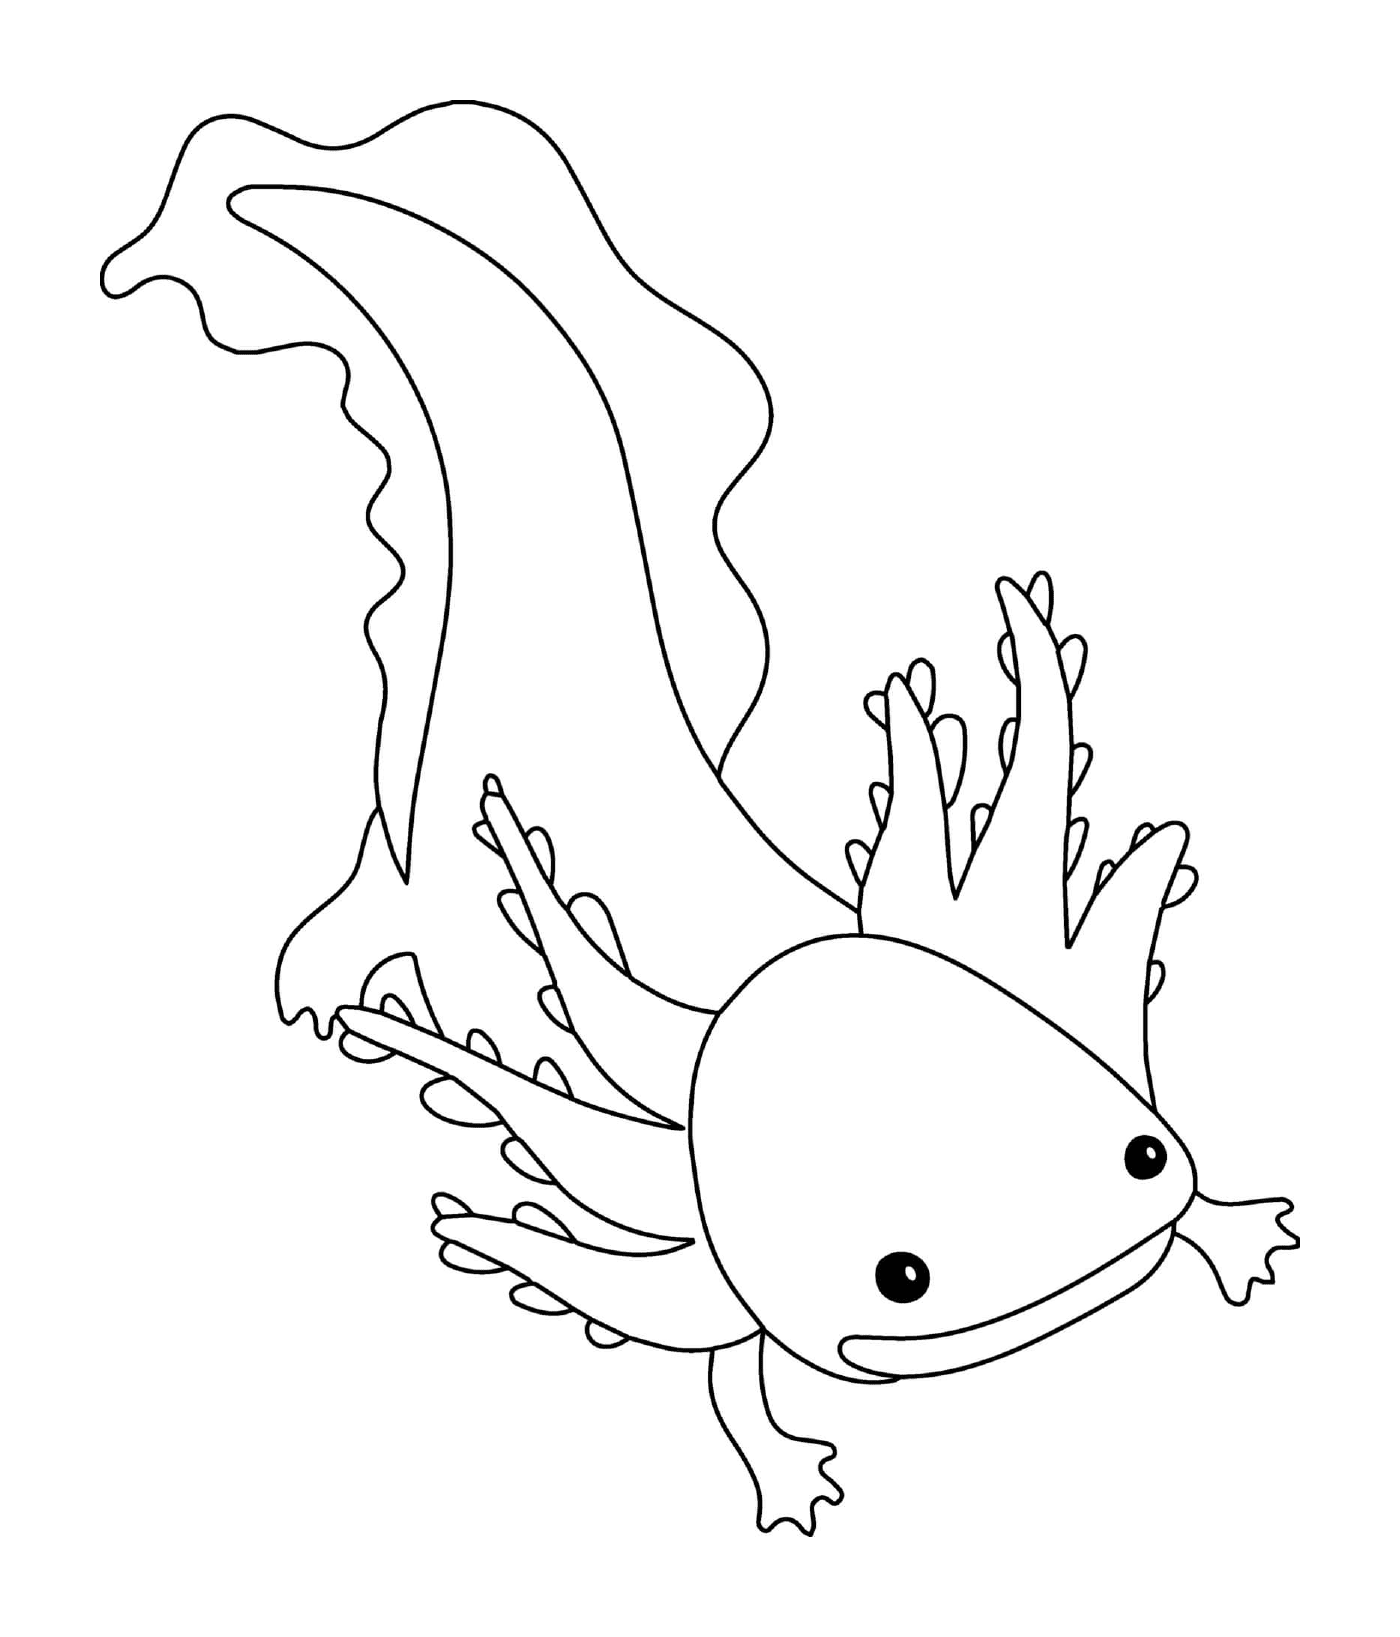 coloriage axolotl animal marin qui passe toute leur vie sans jamais se metamorphoser en adulte